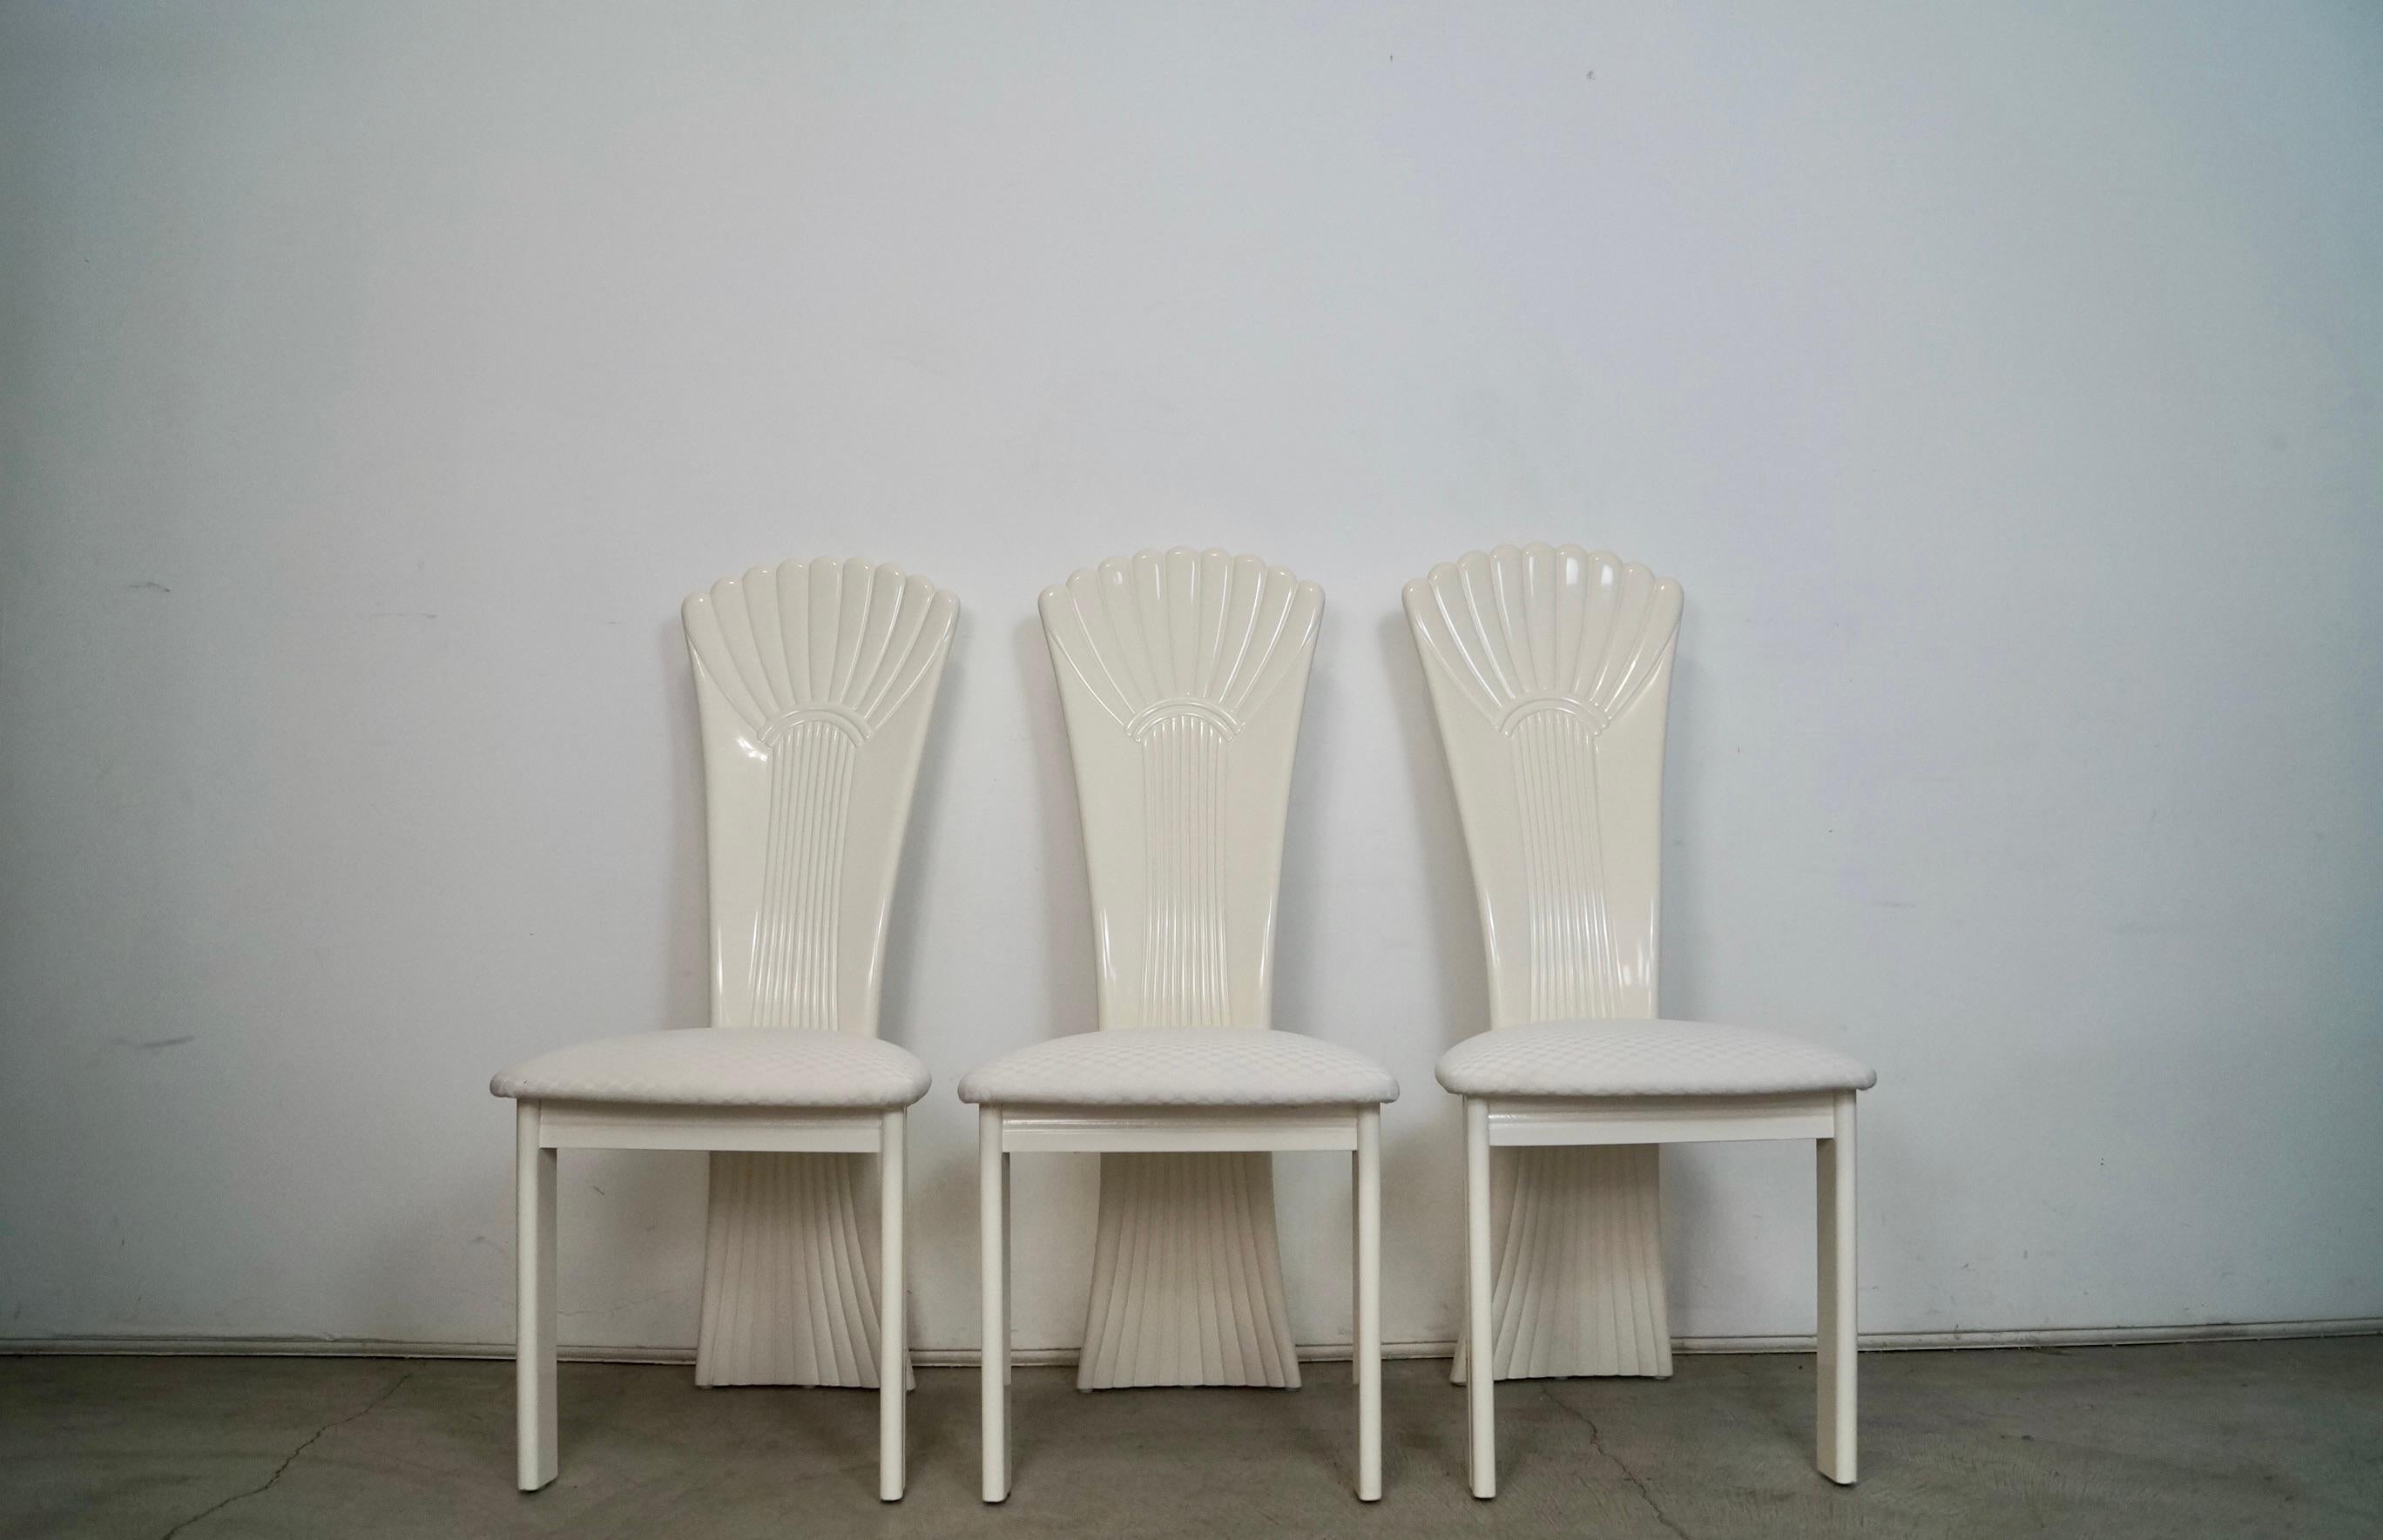 Satz von 3 Hollywood Regency Esszimmerstühlen zu verkaufen. Postmoderne Vintage-Stühle, die in den 1980er Jahren in Italien hergestellt und von Najarian Furniture verkauft wurden. Sehr hochwertige Stühle aus massivem, weiß lackiertem Holz. Der Lack